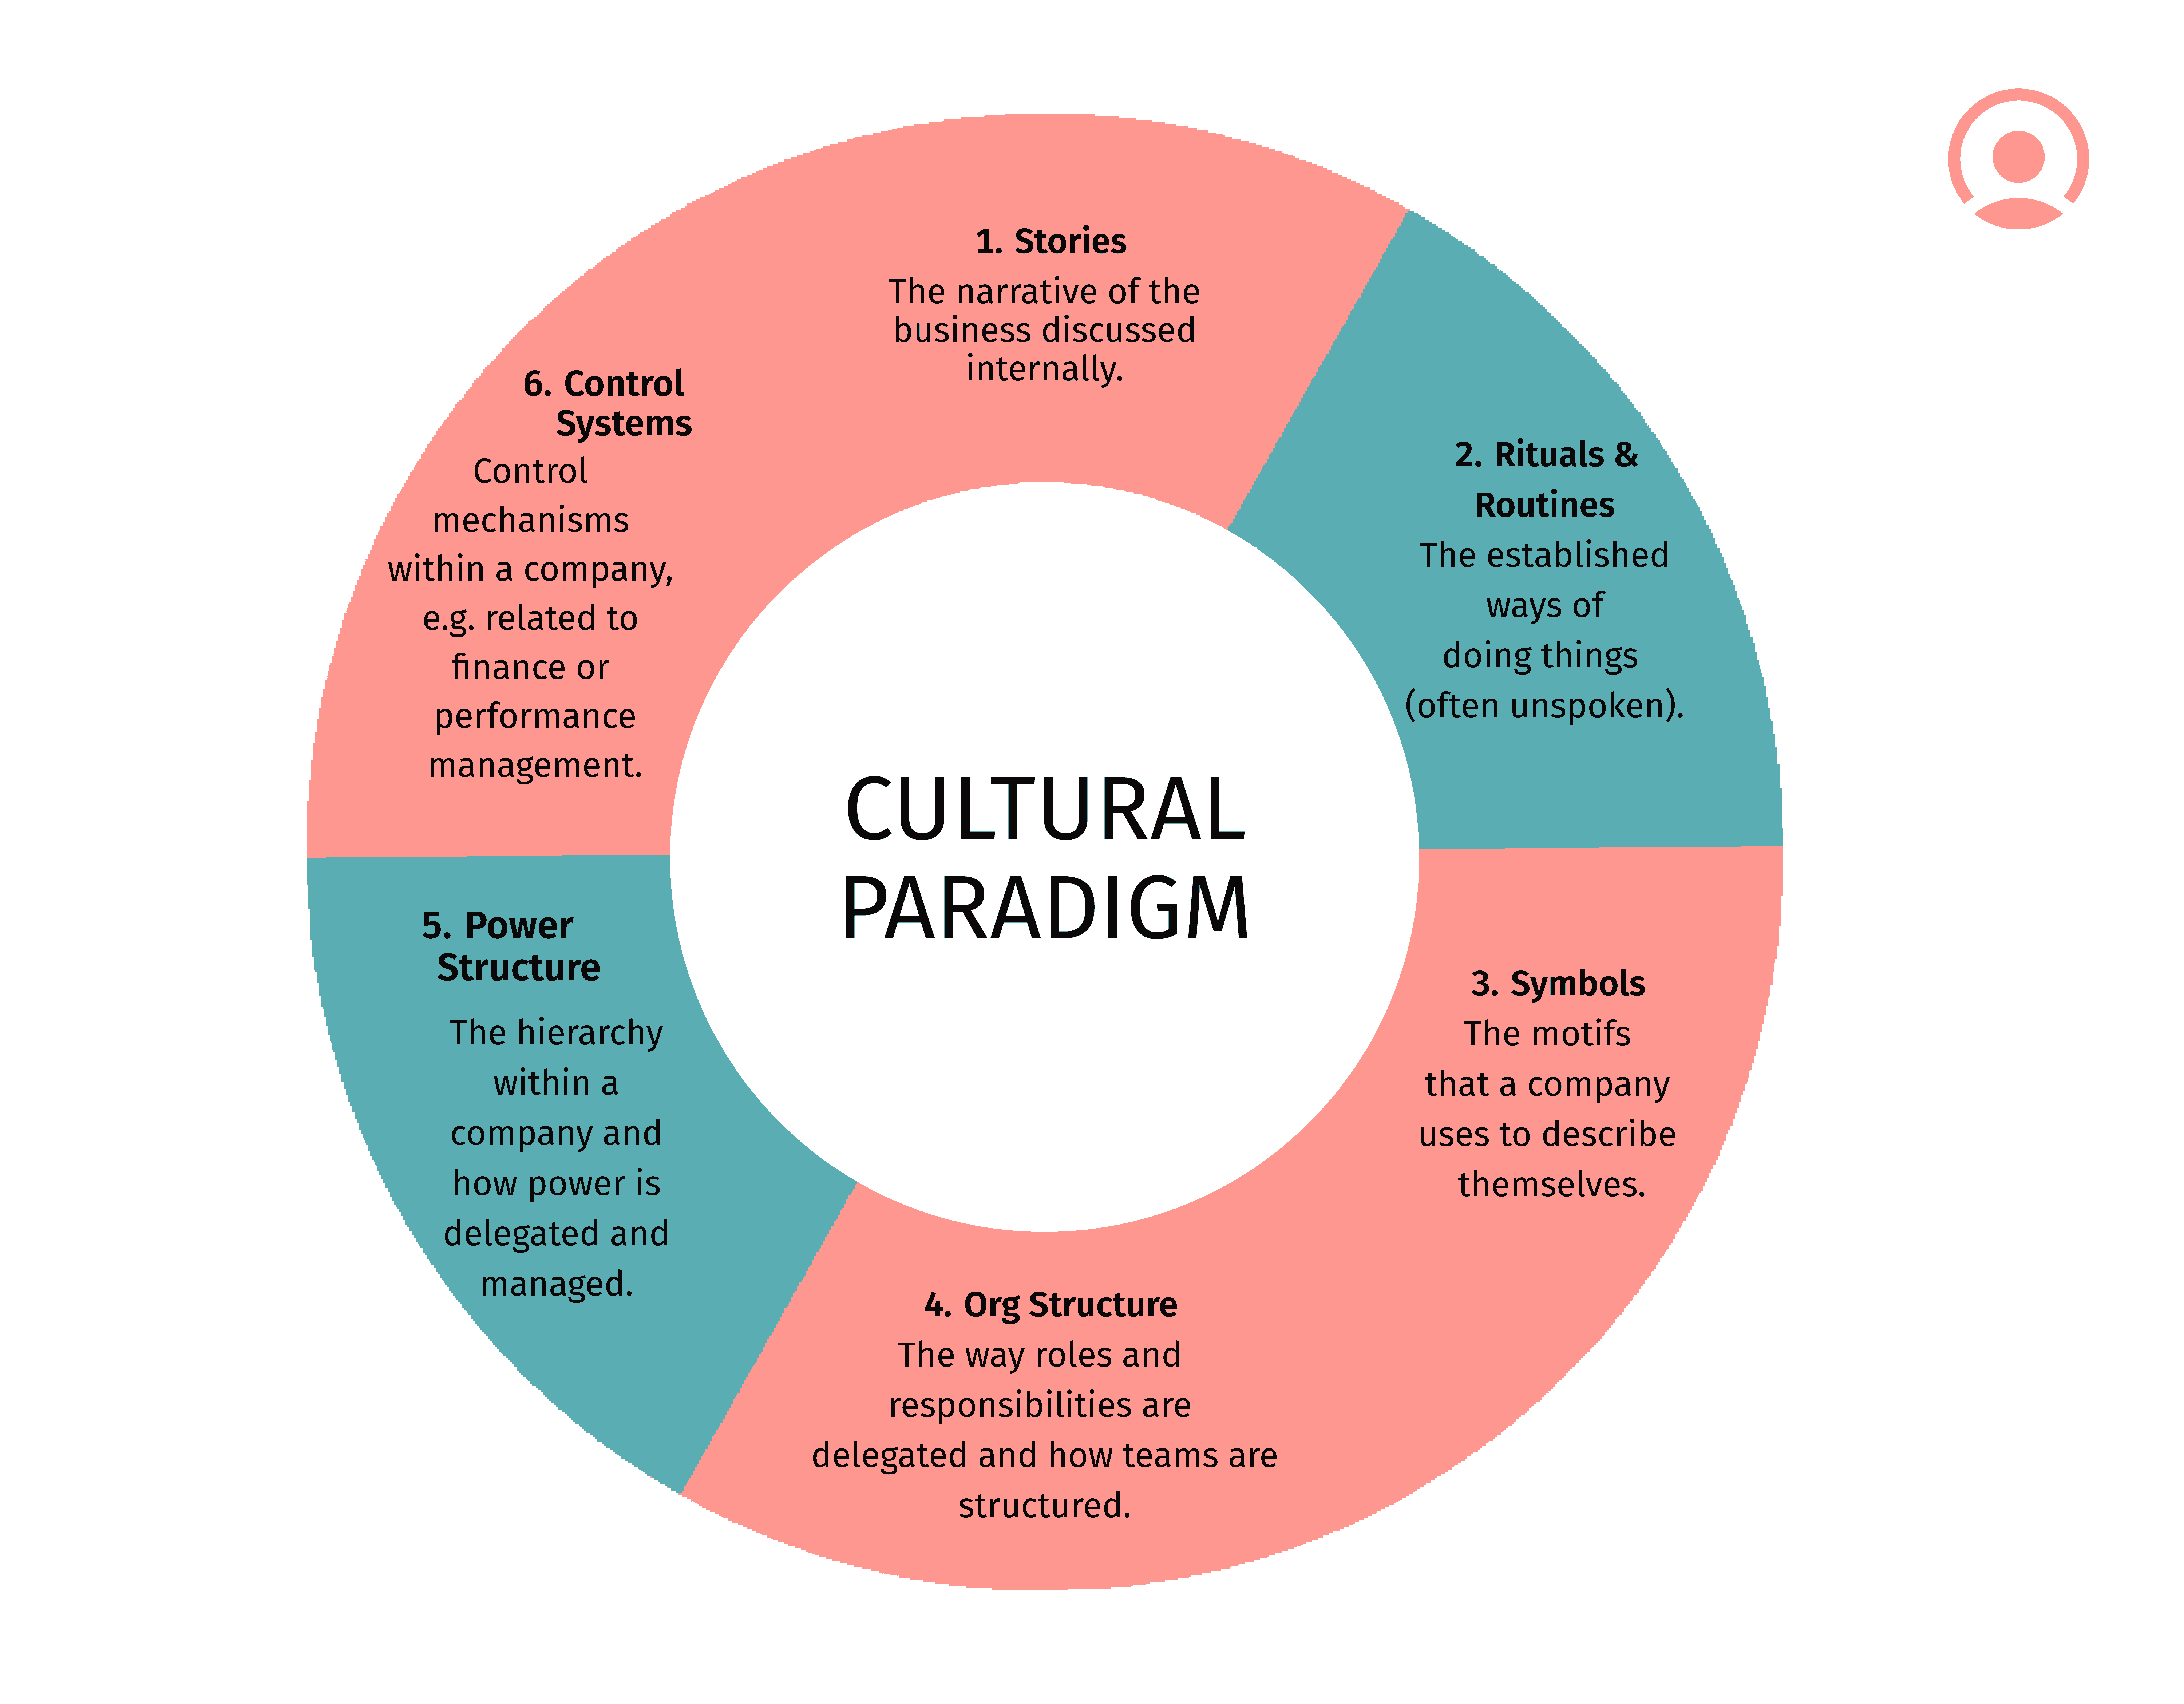 cultural paradigm infographic